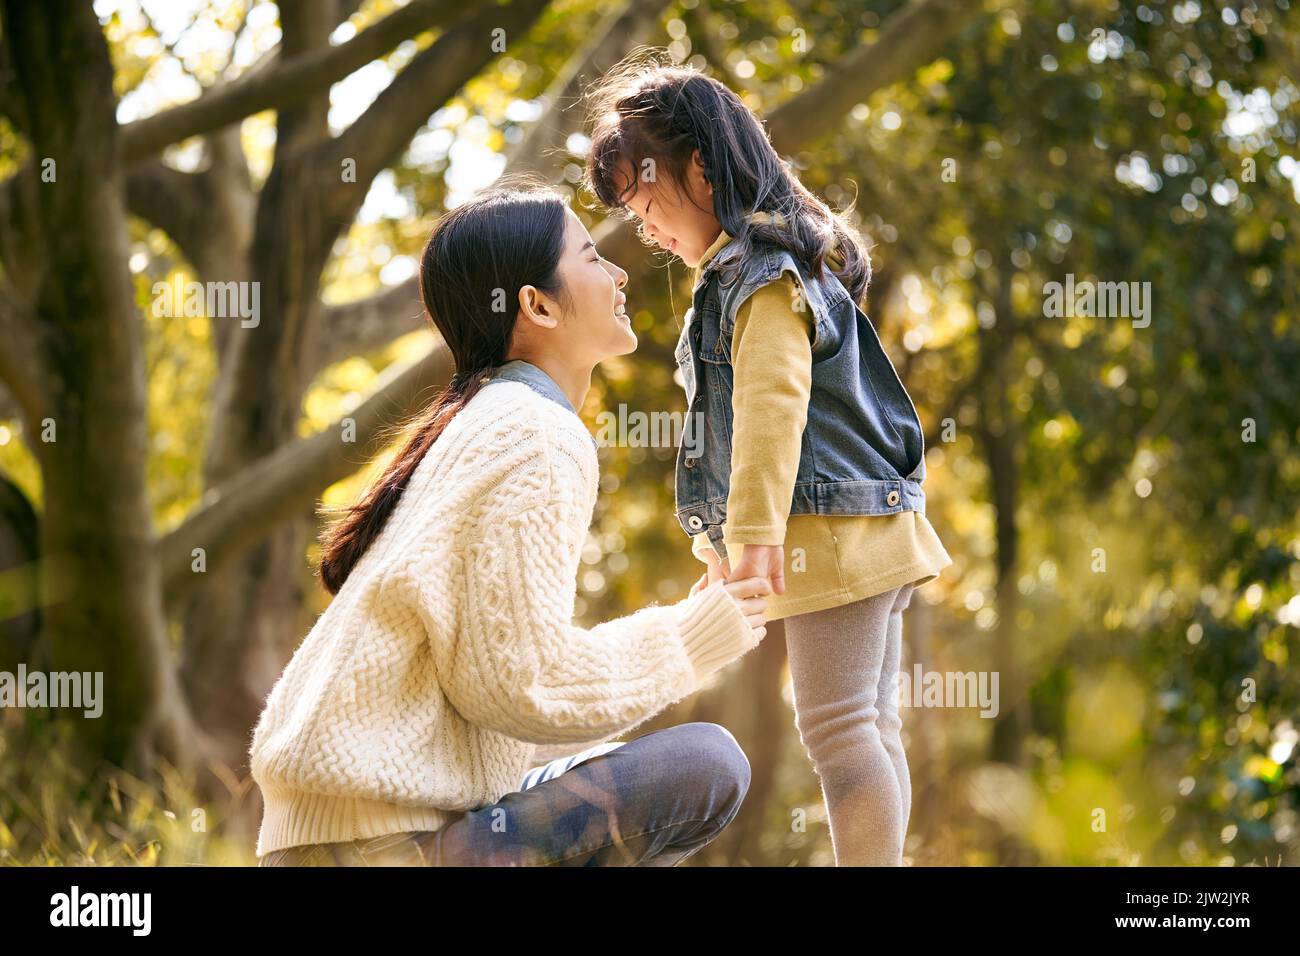 jeune mère asiatique et petite fille appréciant la nature ayant un bon moment à l'extérieur dans le parc Banque D'Images